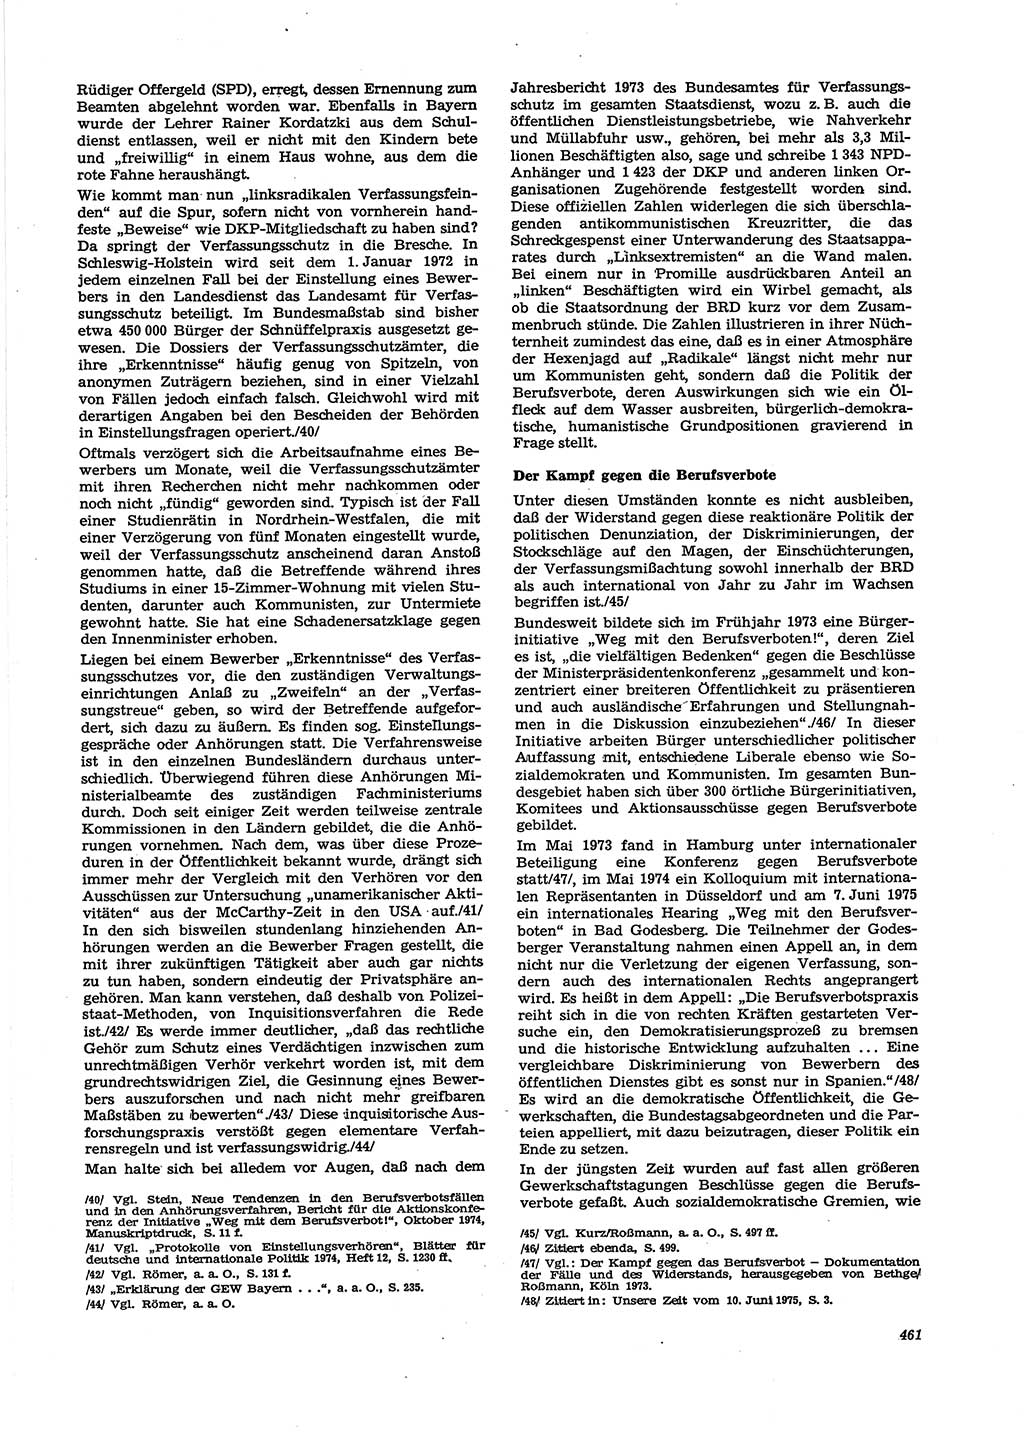 Neue Justiz (NJ), Zeitschrift für Recht und Rechtswissenschaft [Deutsche Demokratische Republik (DDR)], 29. Jahrgang 1975, Seite 461 (NJ DDR 1975, S. 461)